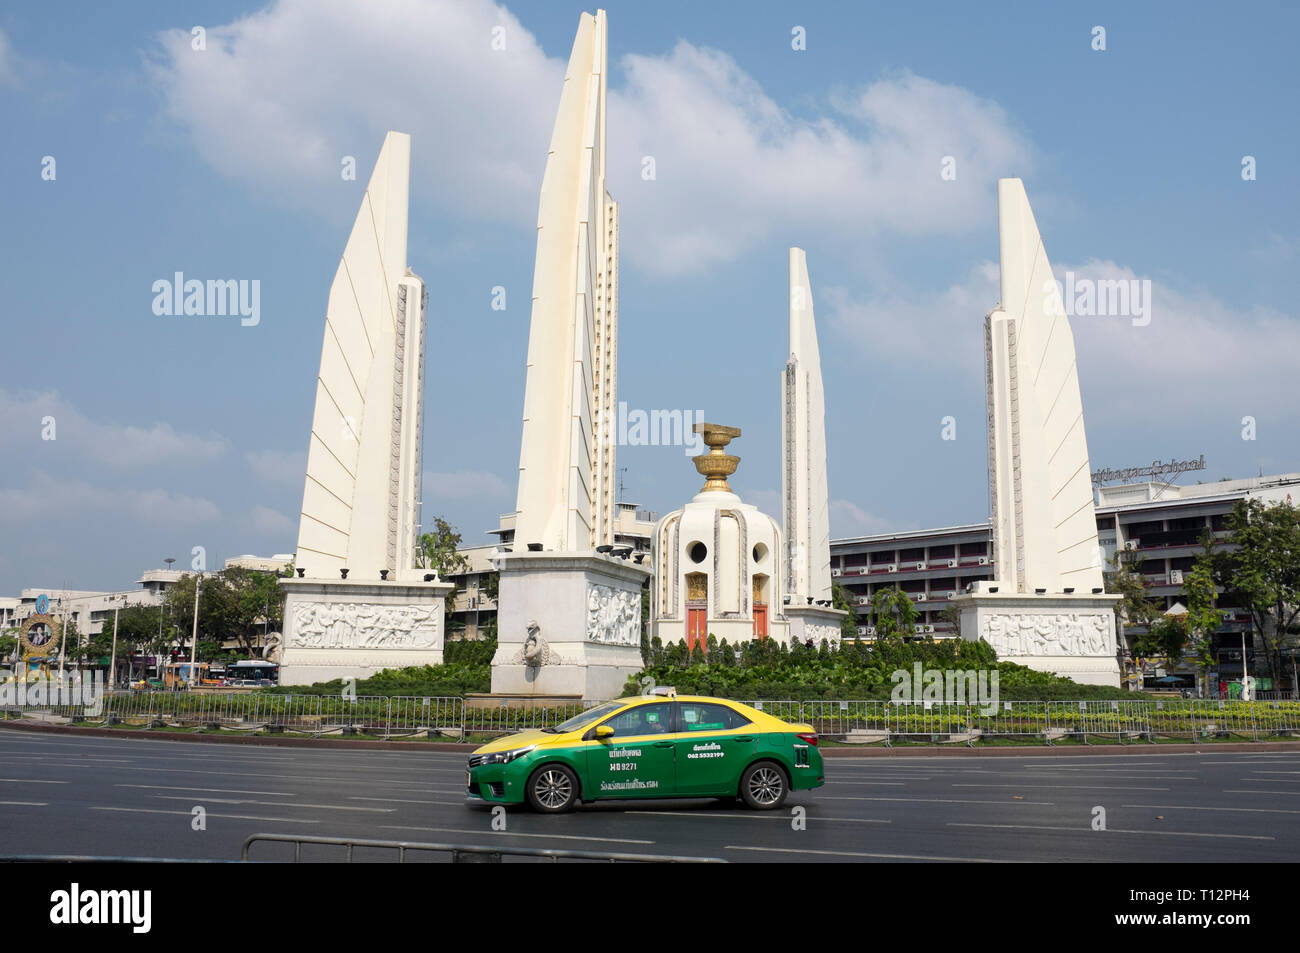 La democracia Monument Bangkok Foto de stock